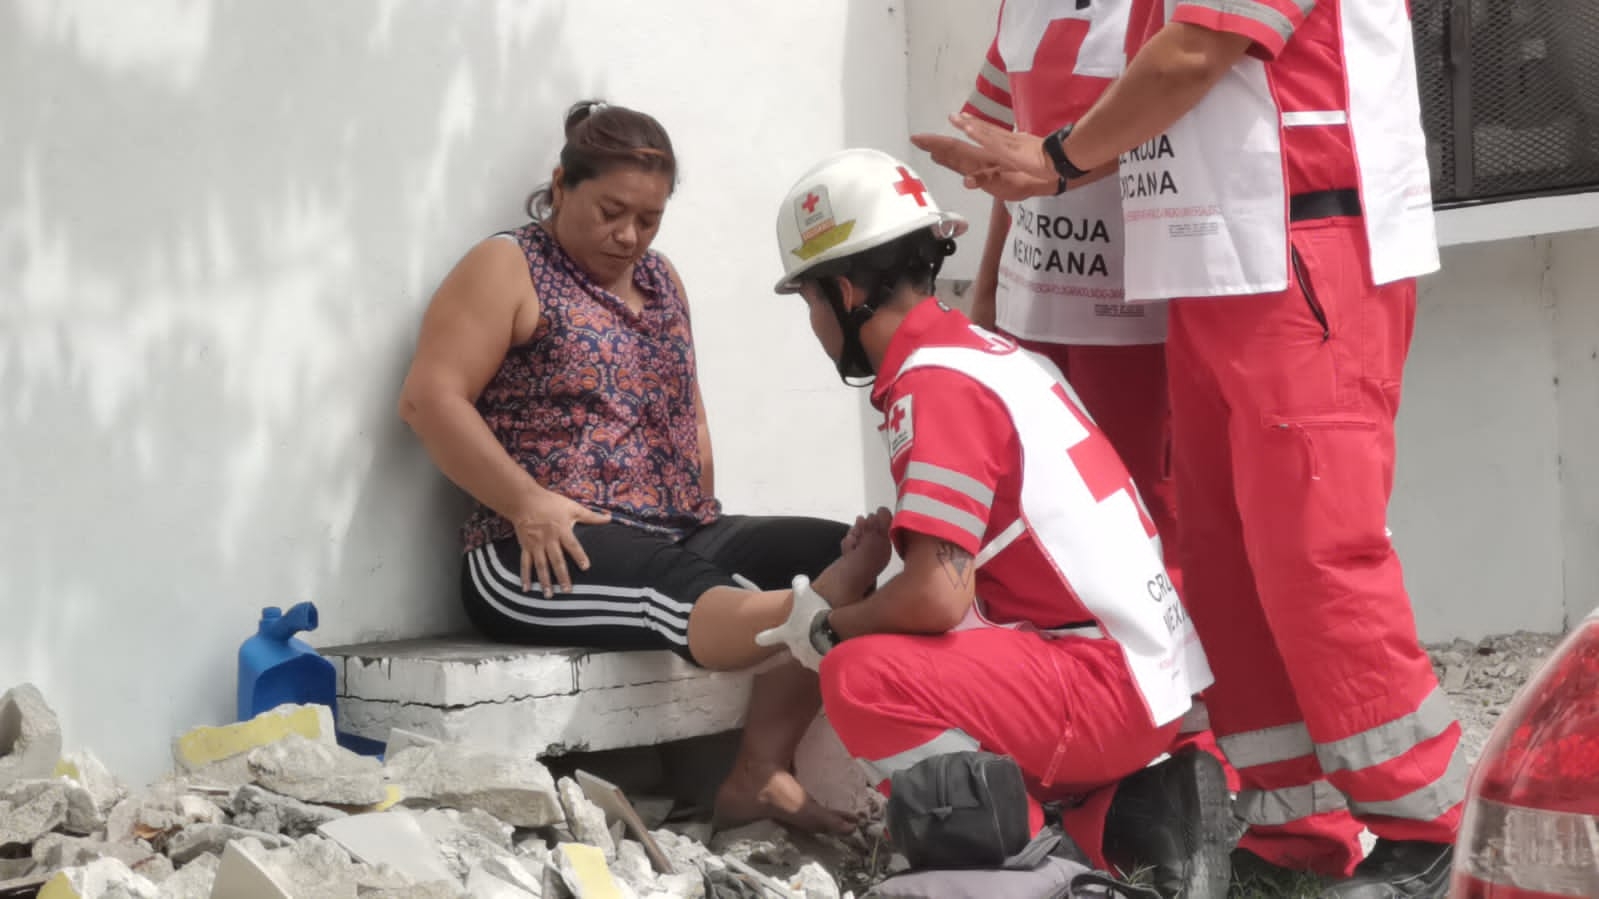 Paramédicos de la Cruz Roja atendieron a la mujer